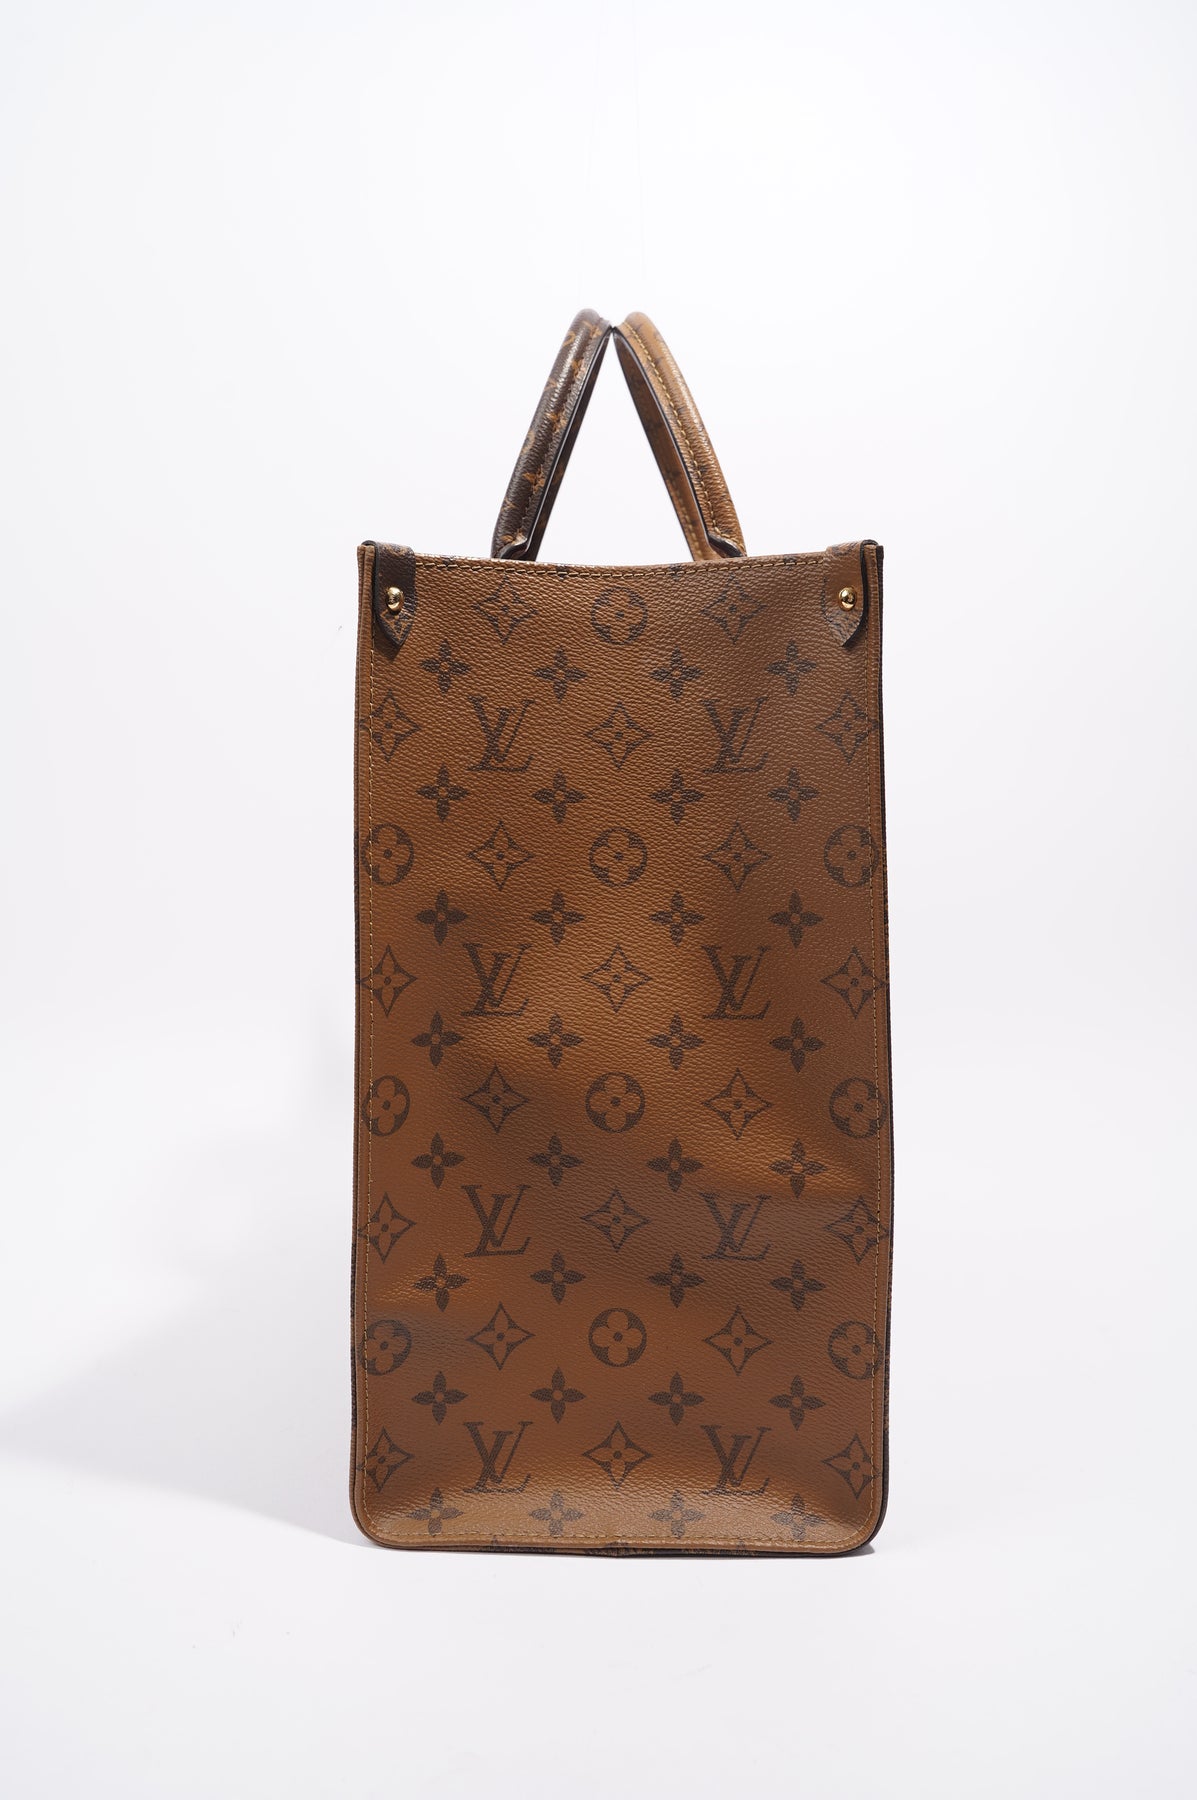 Louis Vuitton Limited Edition Monogram Canvas Atlantis MM Bag